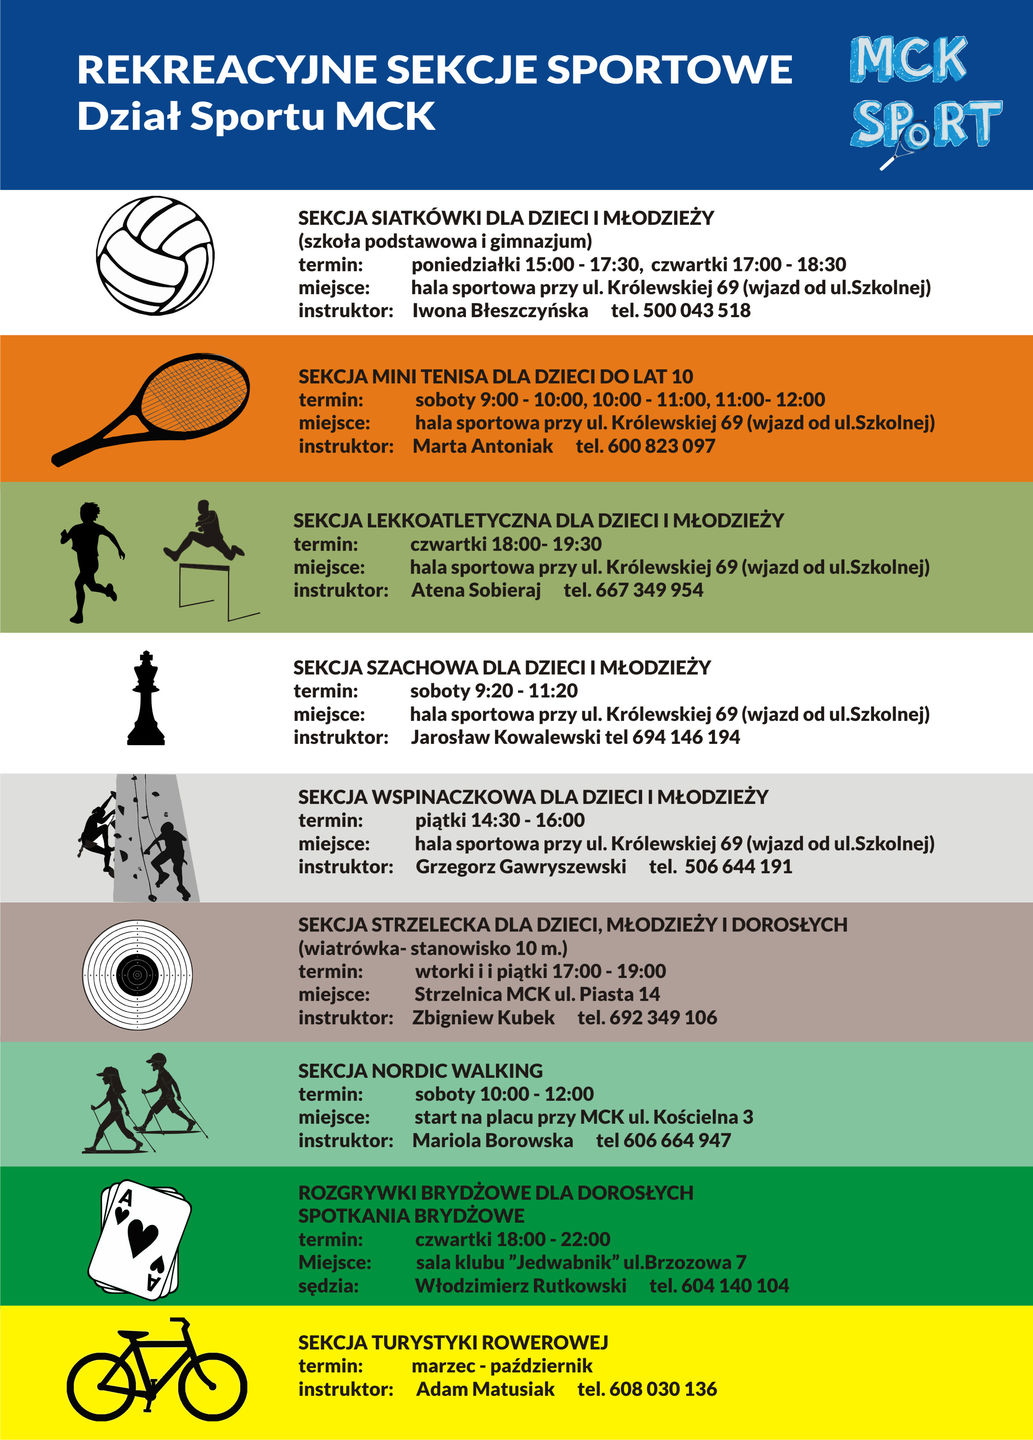 Plakat informujący o sekcjach sportowych